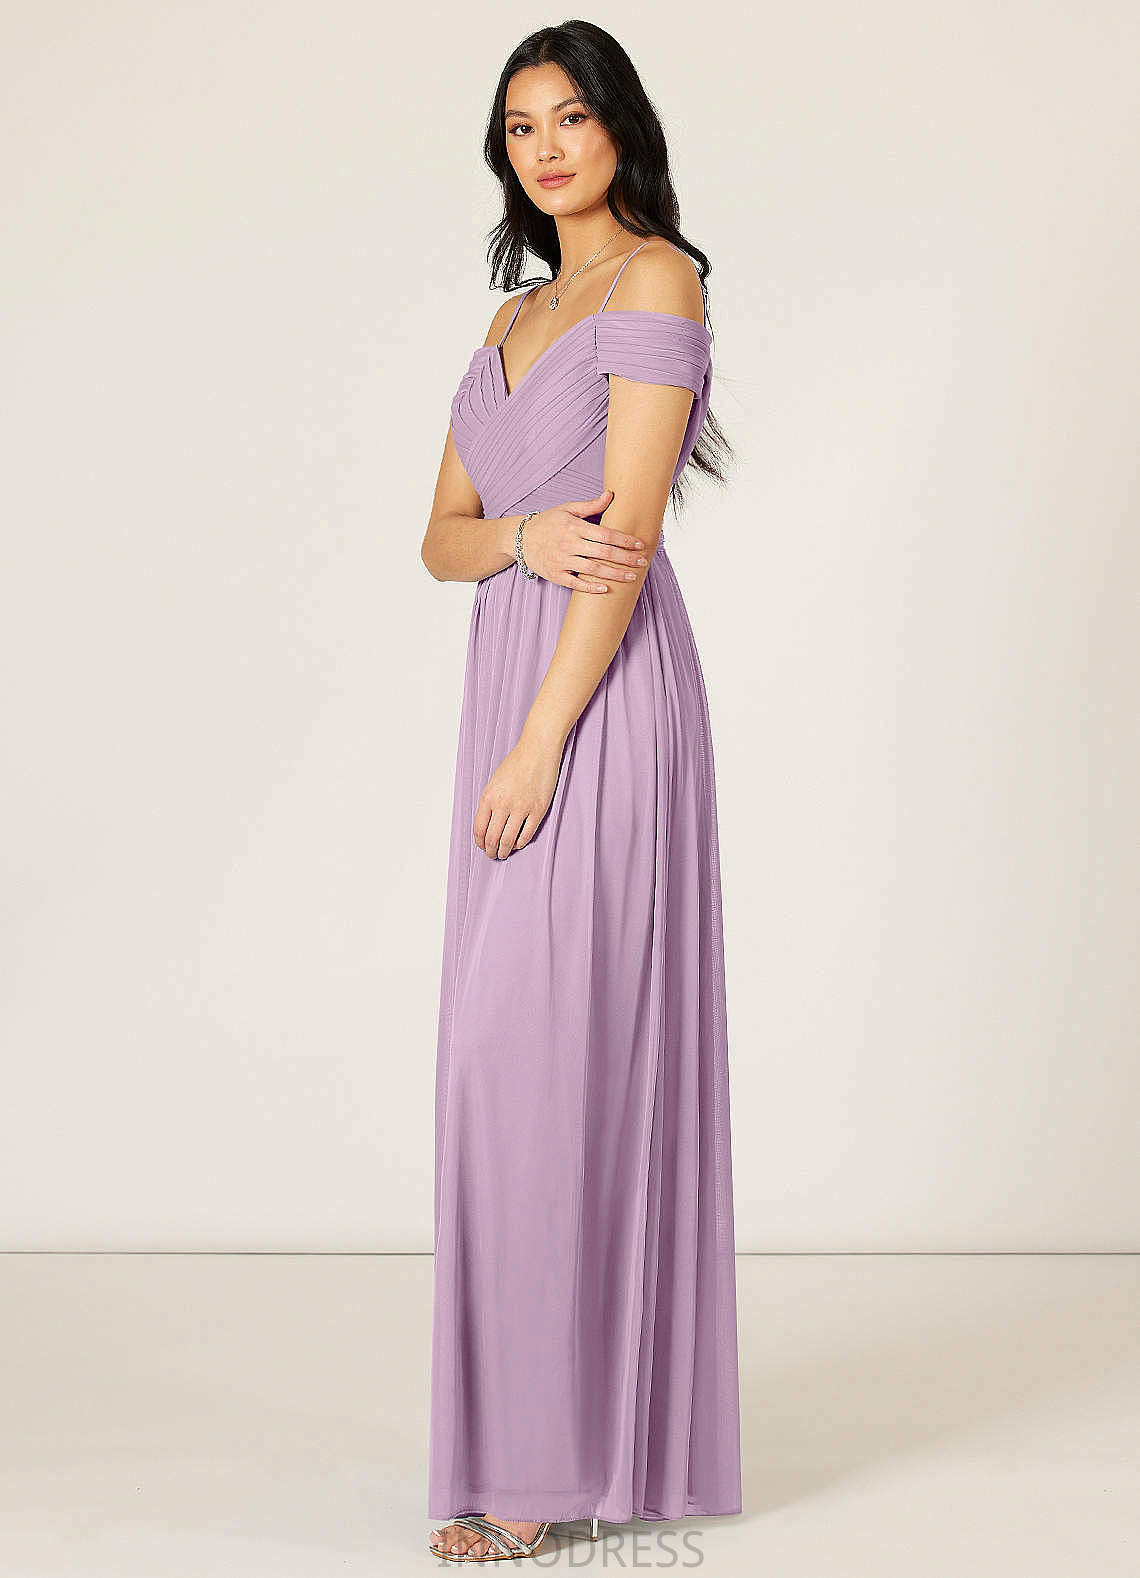 Leticia V-Neck A-Line/Princess Sleeveless Natural Waist Floor Length Bridesmaid Dresses